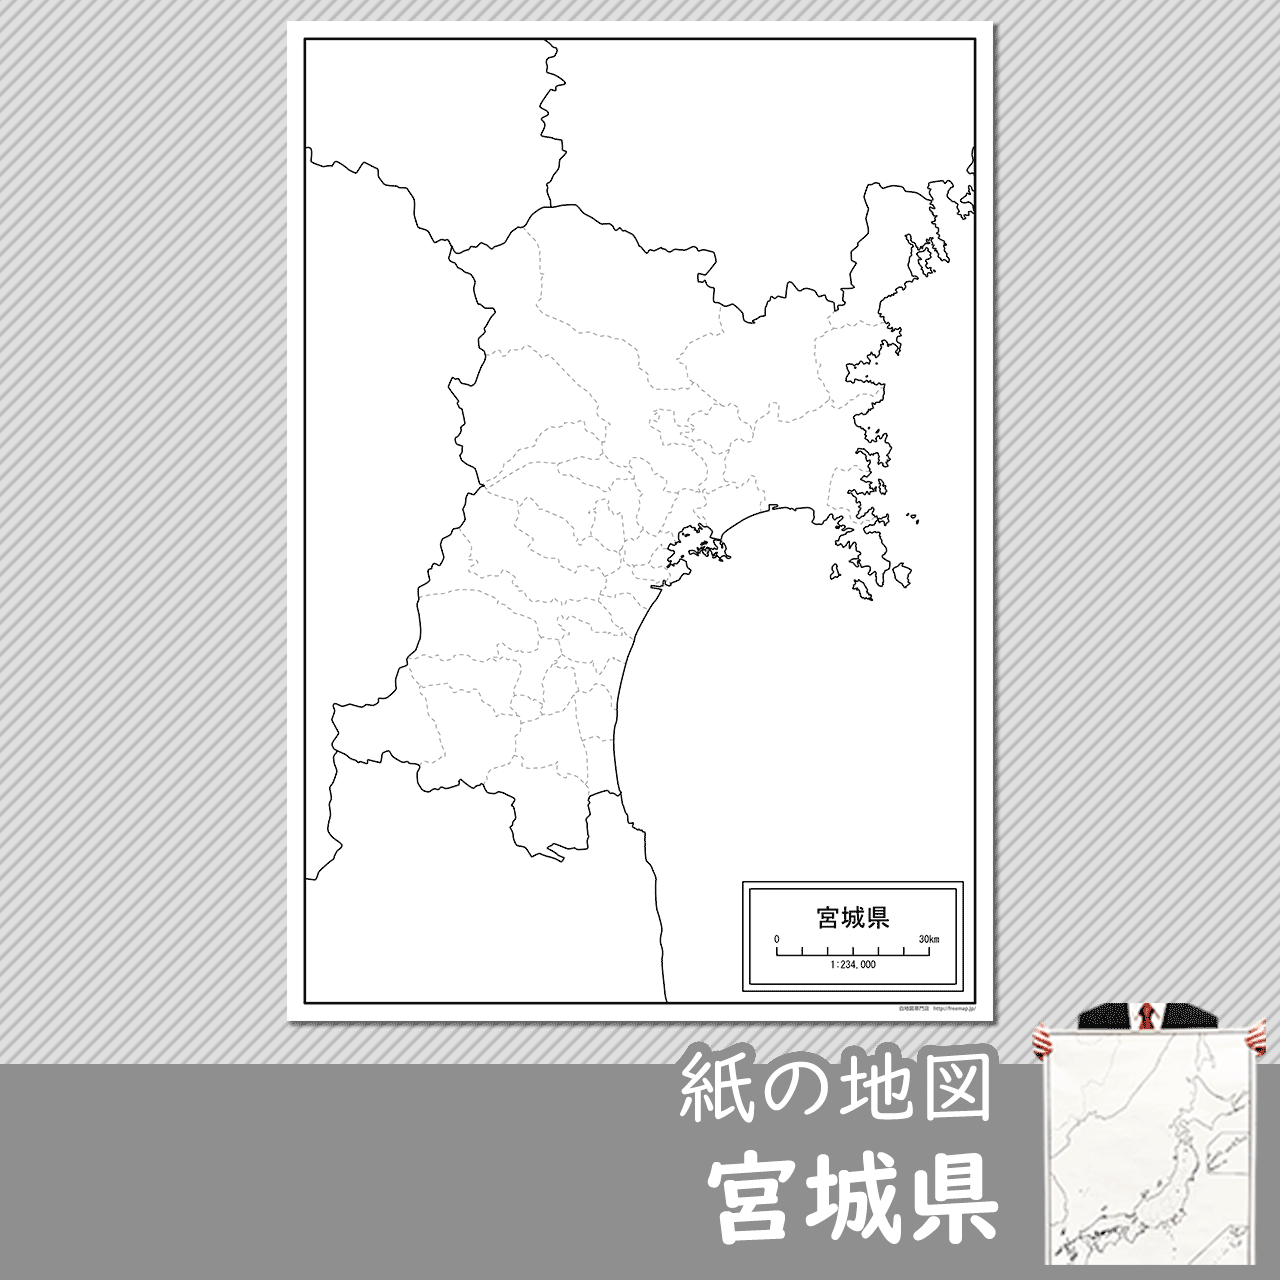 宮城県の紙の白地図のサムネイル